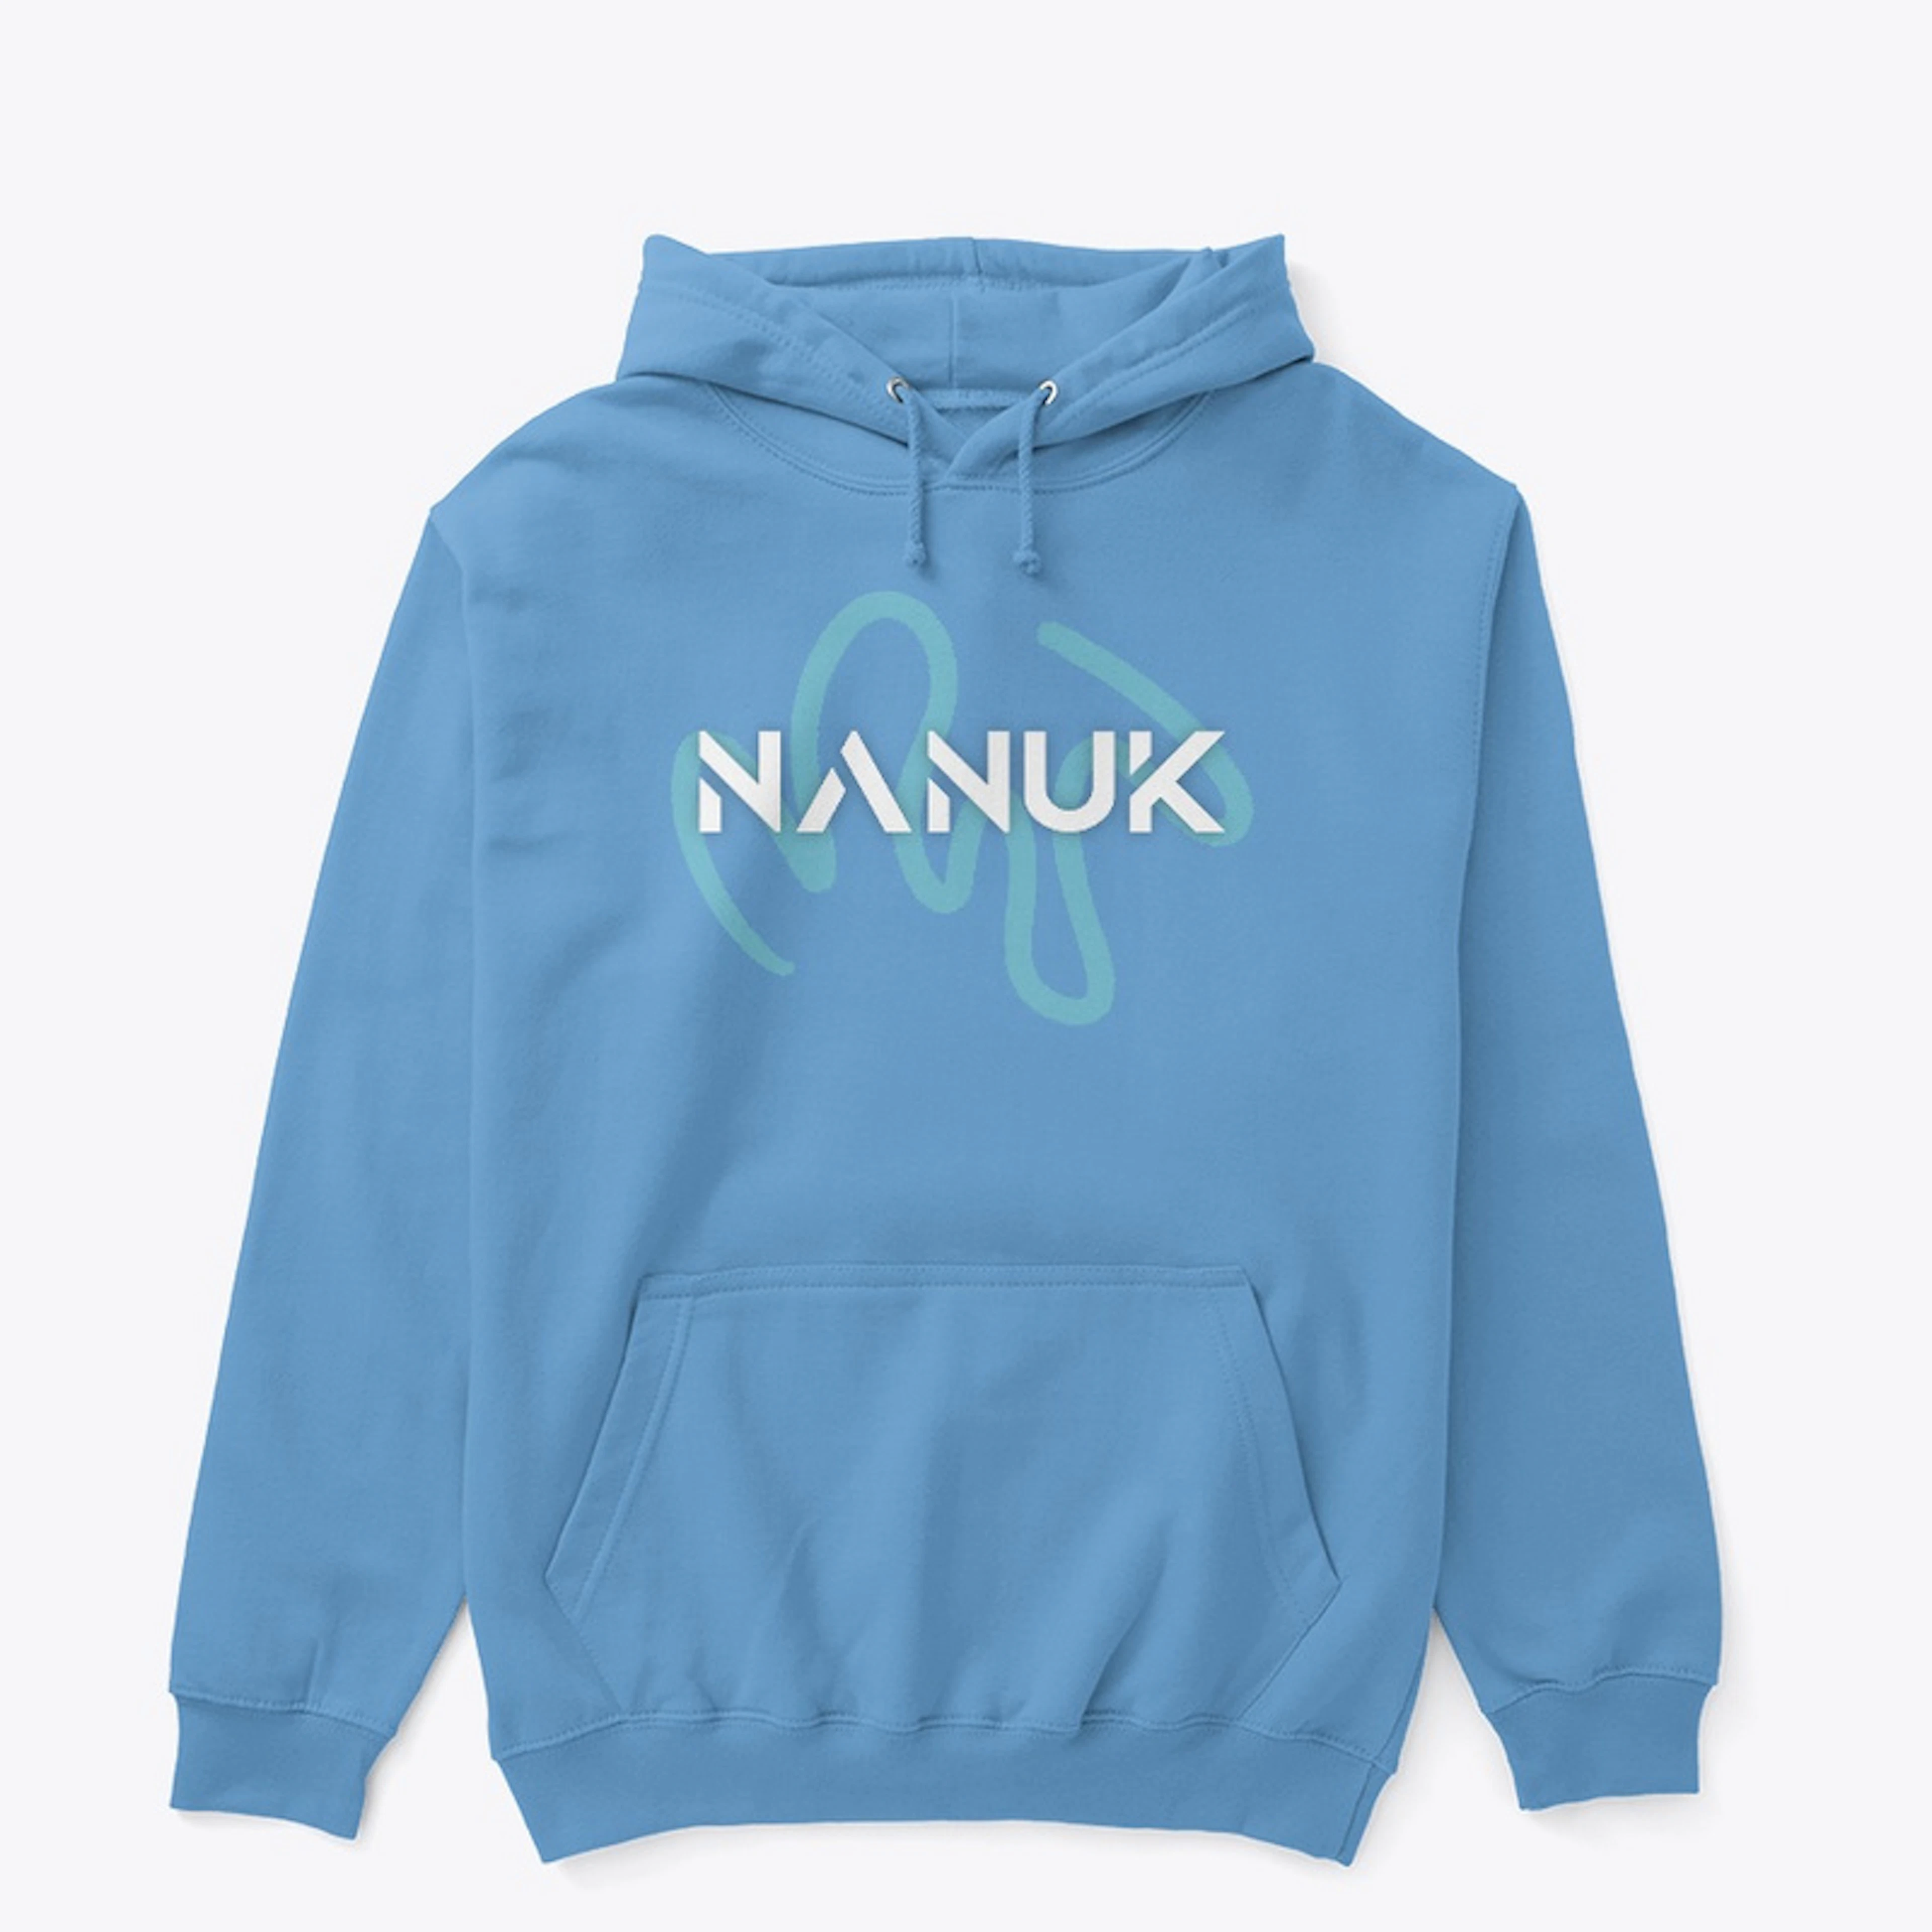 Nanuk's Classic Hoodie